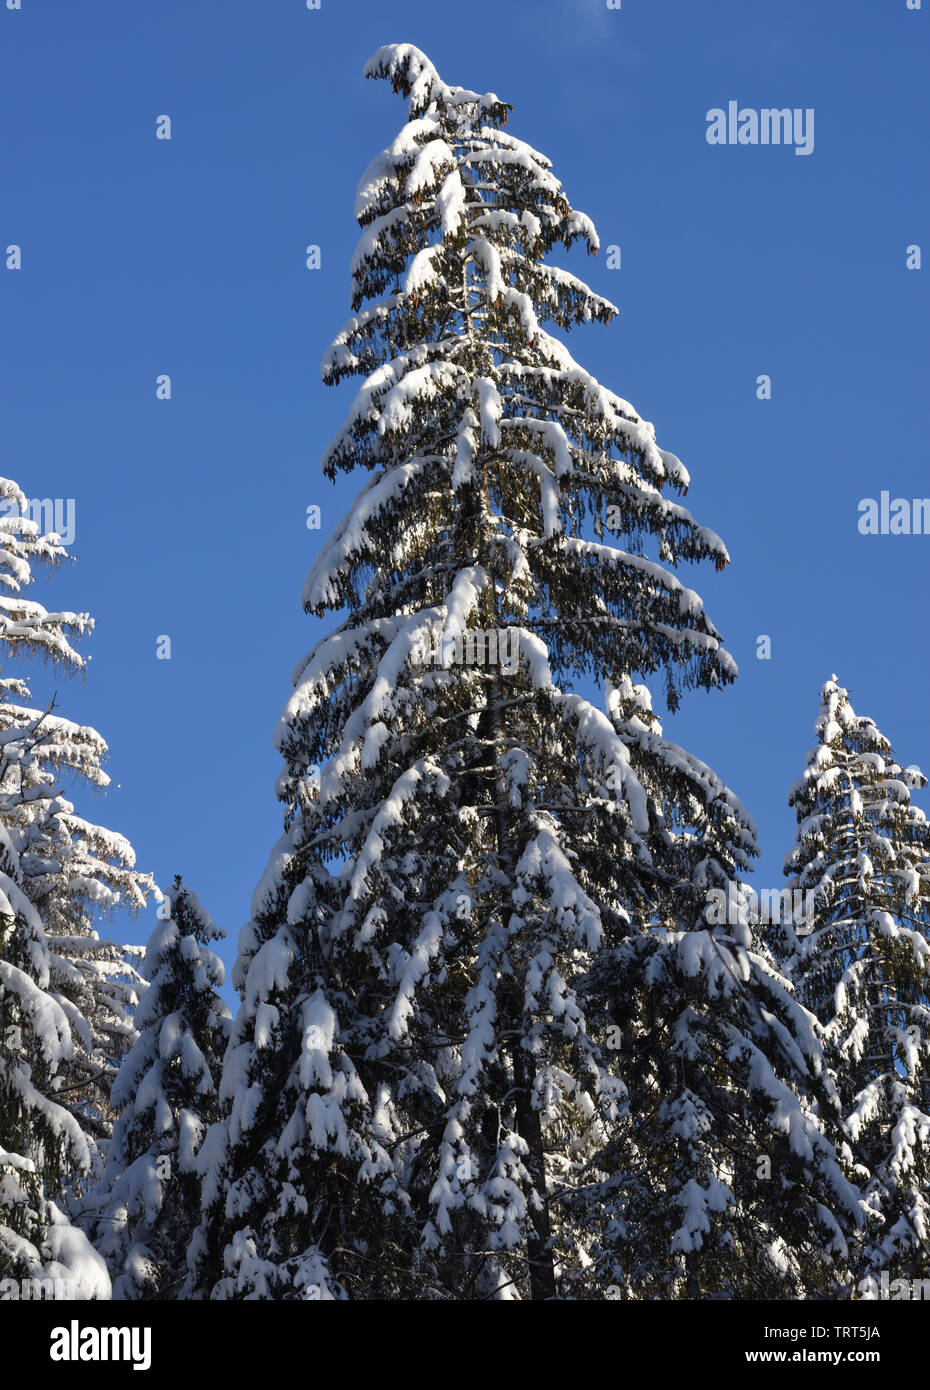 Snow covered fir tree against a blue sky. Samoens, Haute Savoie, France. Stock Photo